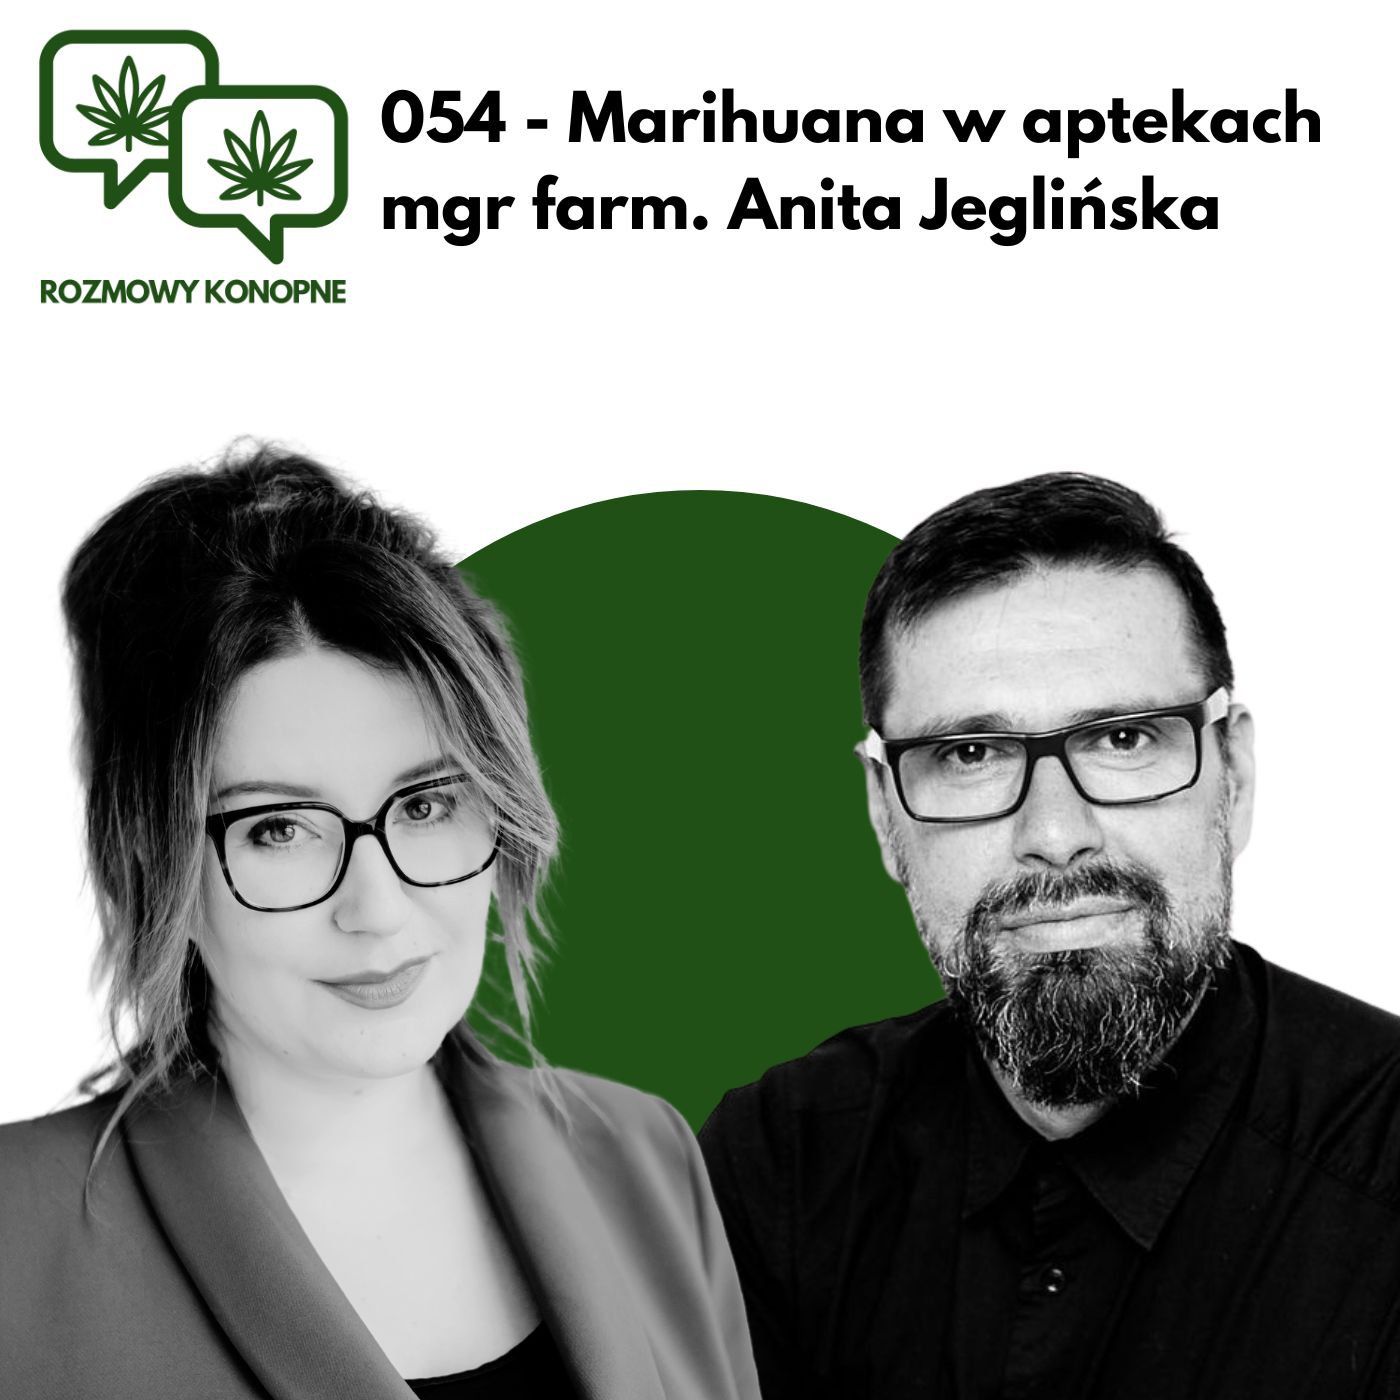 054 - Marihuana w aptekach mgr farm. Anita Jeglińska